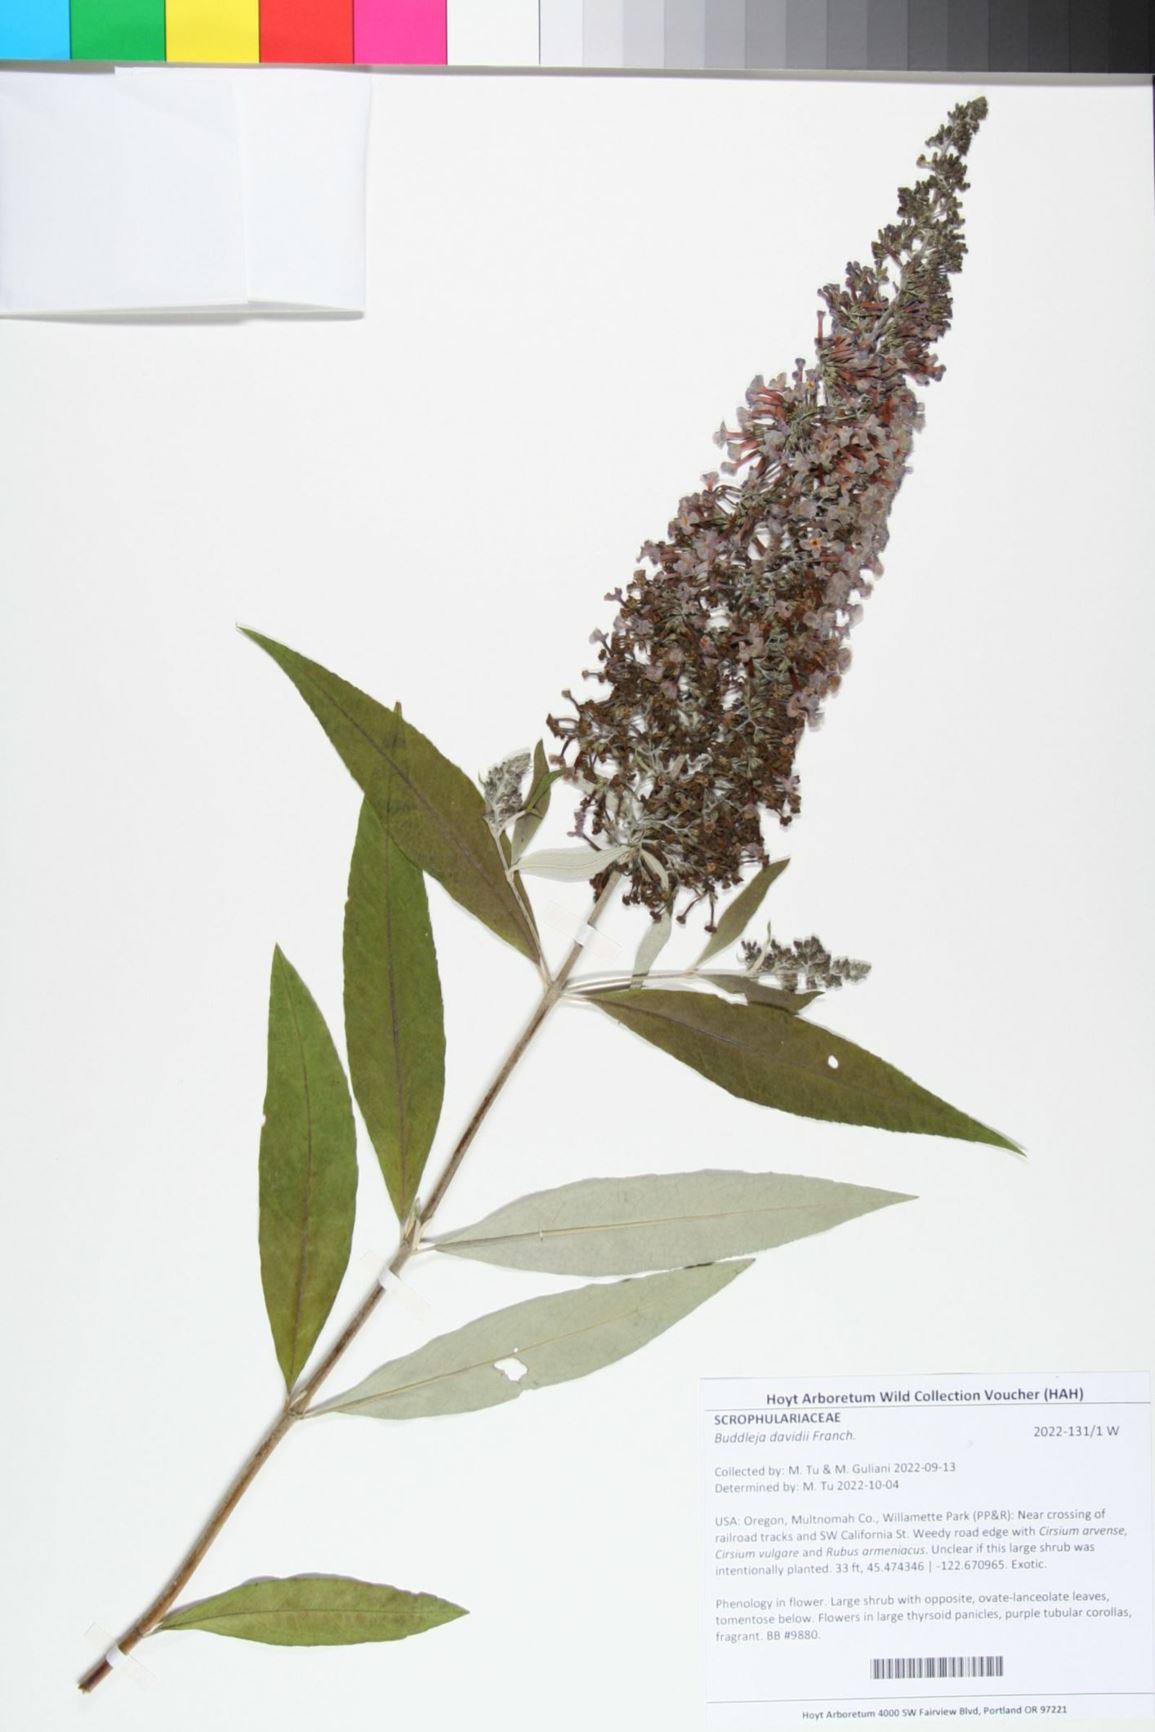 Buddleja davidii - butterflybush, butterfly bush, summer lilac